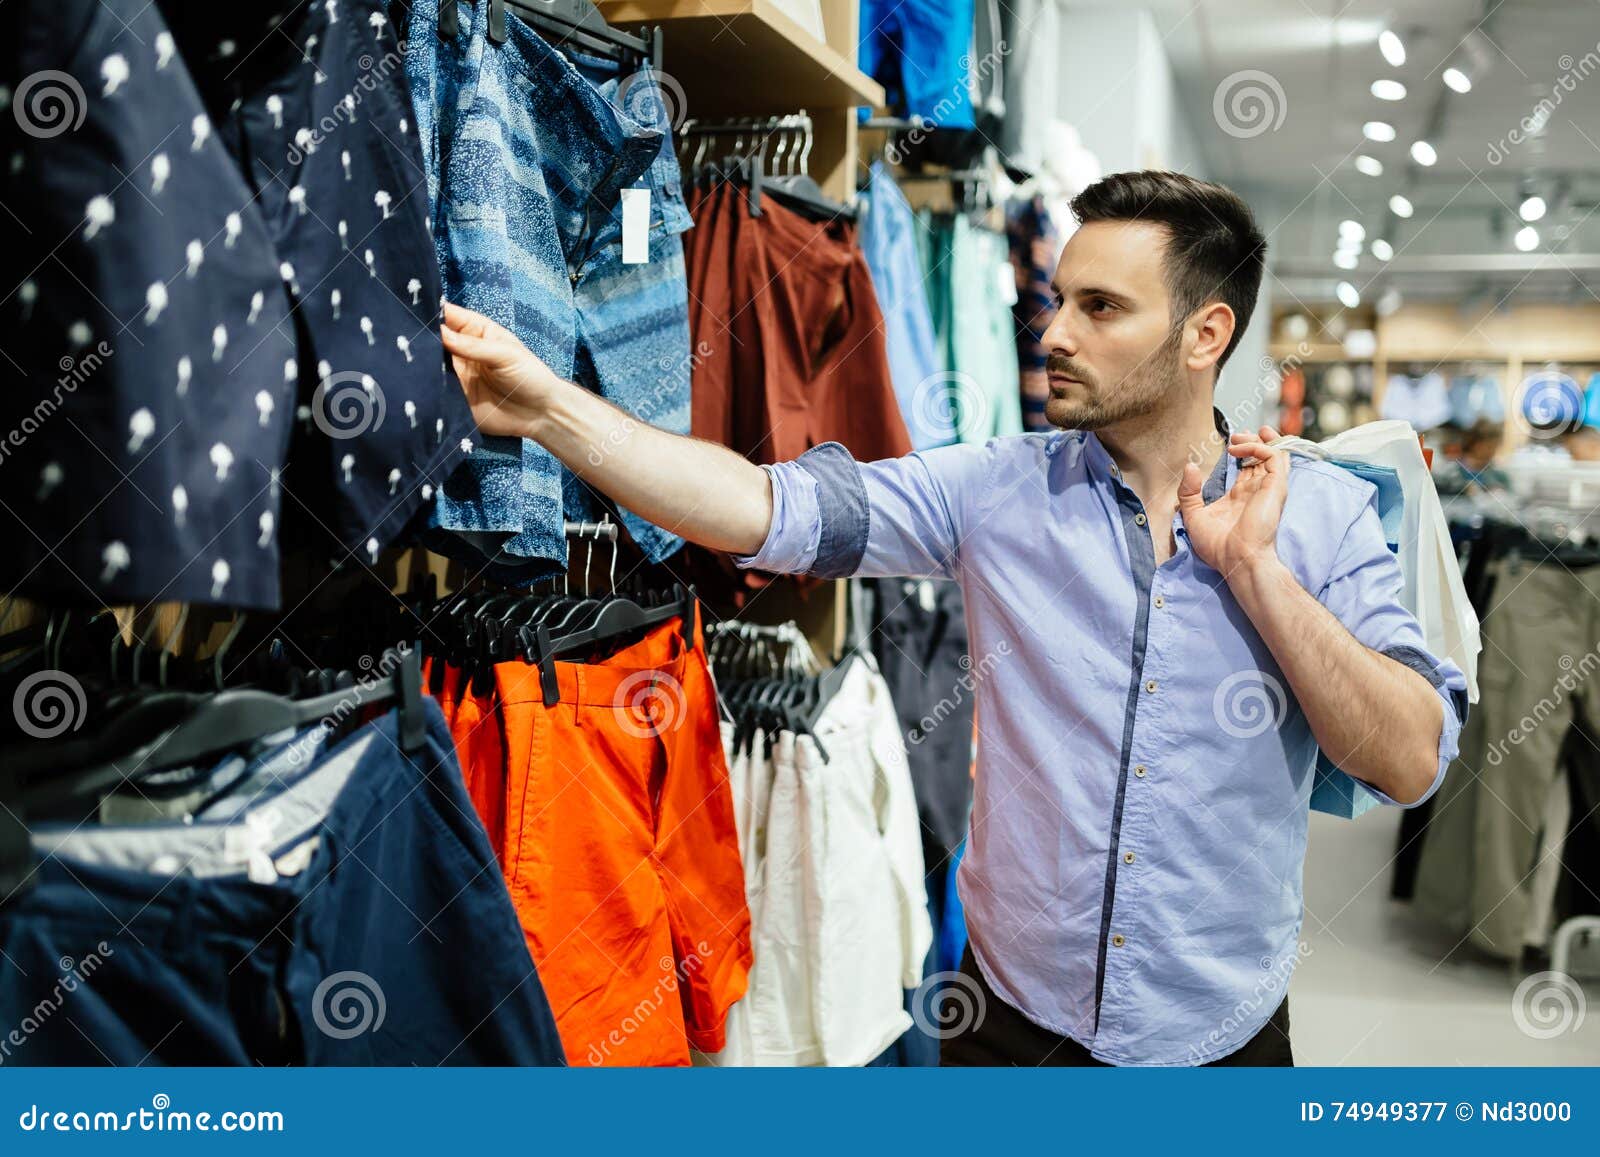 Магазин мужей видео. Парень в магазине одежды. Шоппинг мужской. Мужчина выбирает одежду. Мужчина шоппинг.